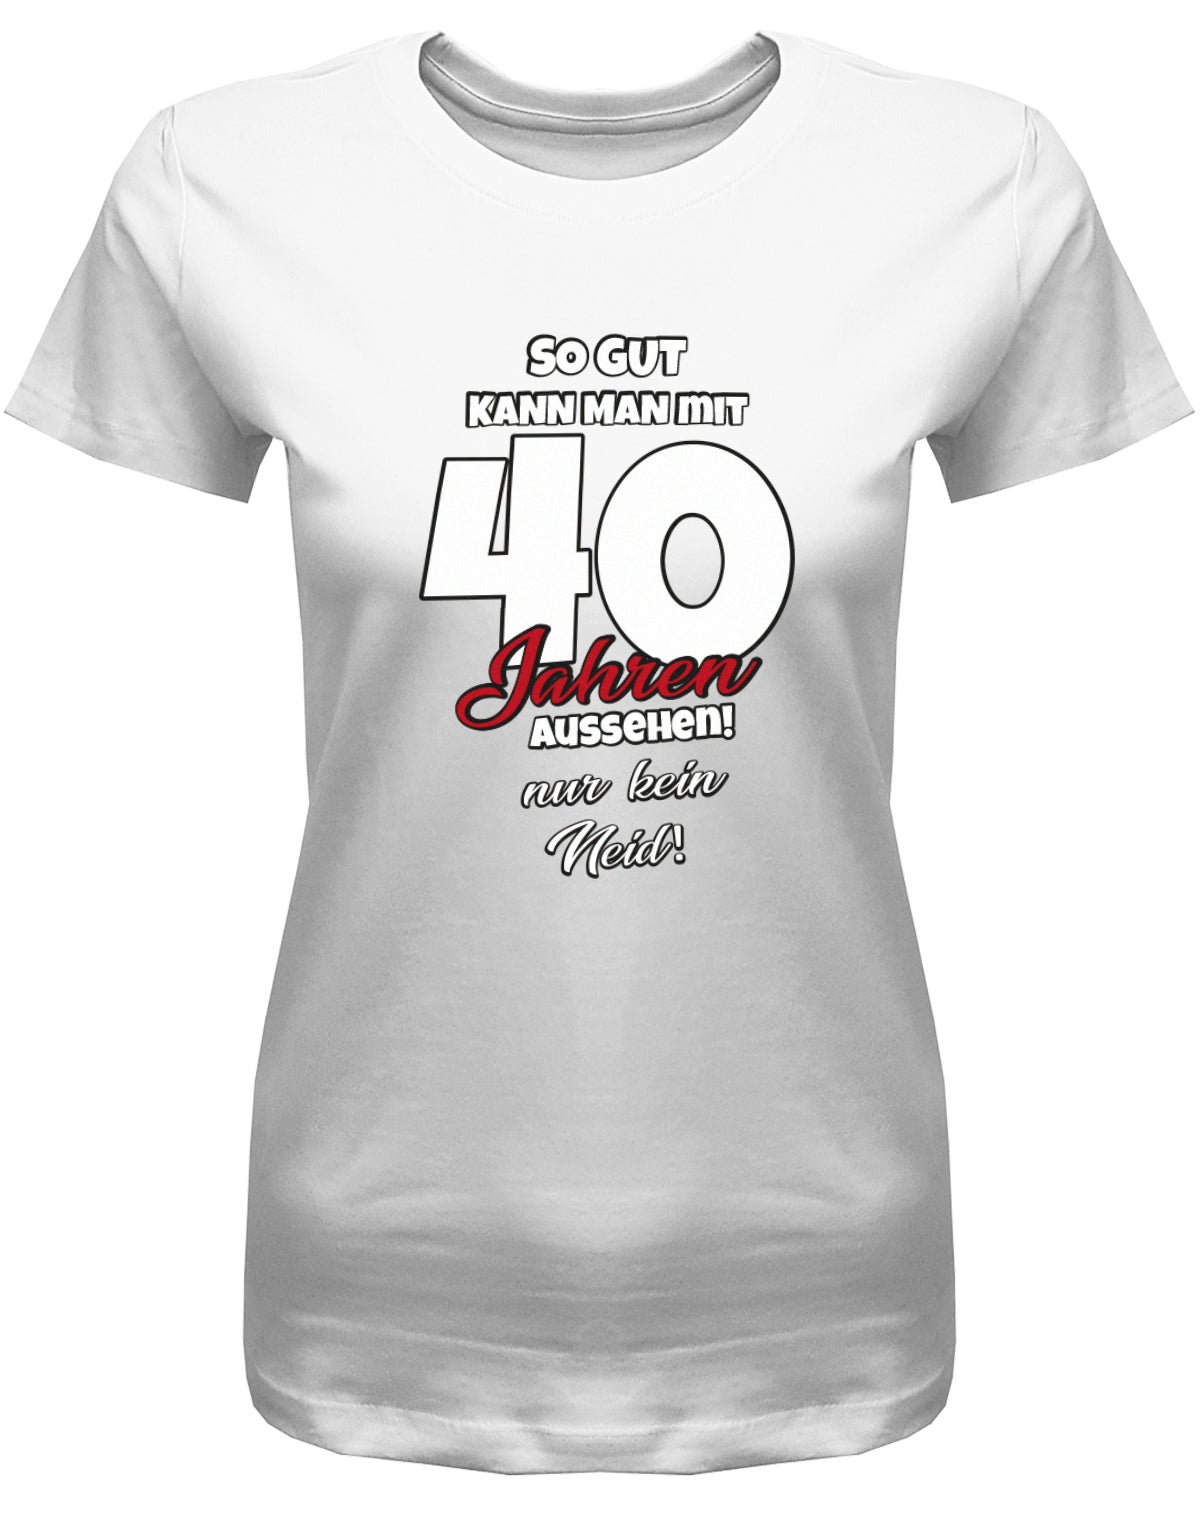 Lustiges T-Shirt zum 40 Geburtstag für die Frau Bedruckt mit So gut kann man mit 40 Jahren aussehen! Nur kein Neid! Weiss